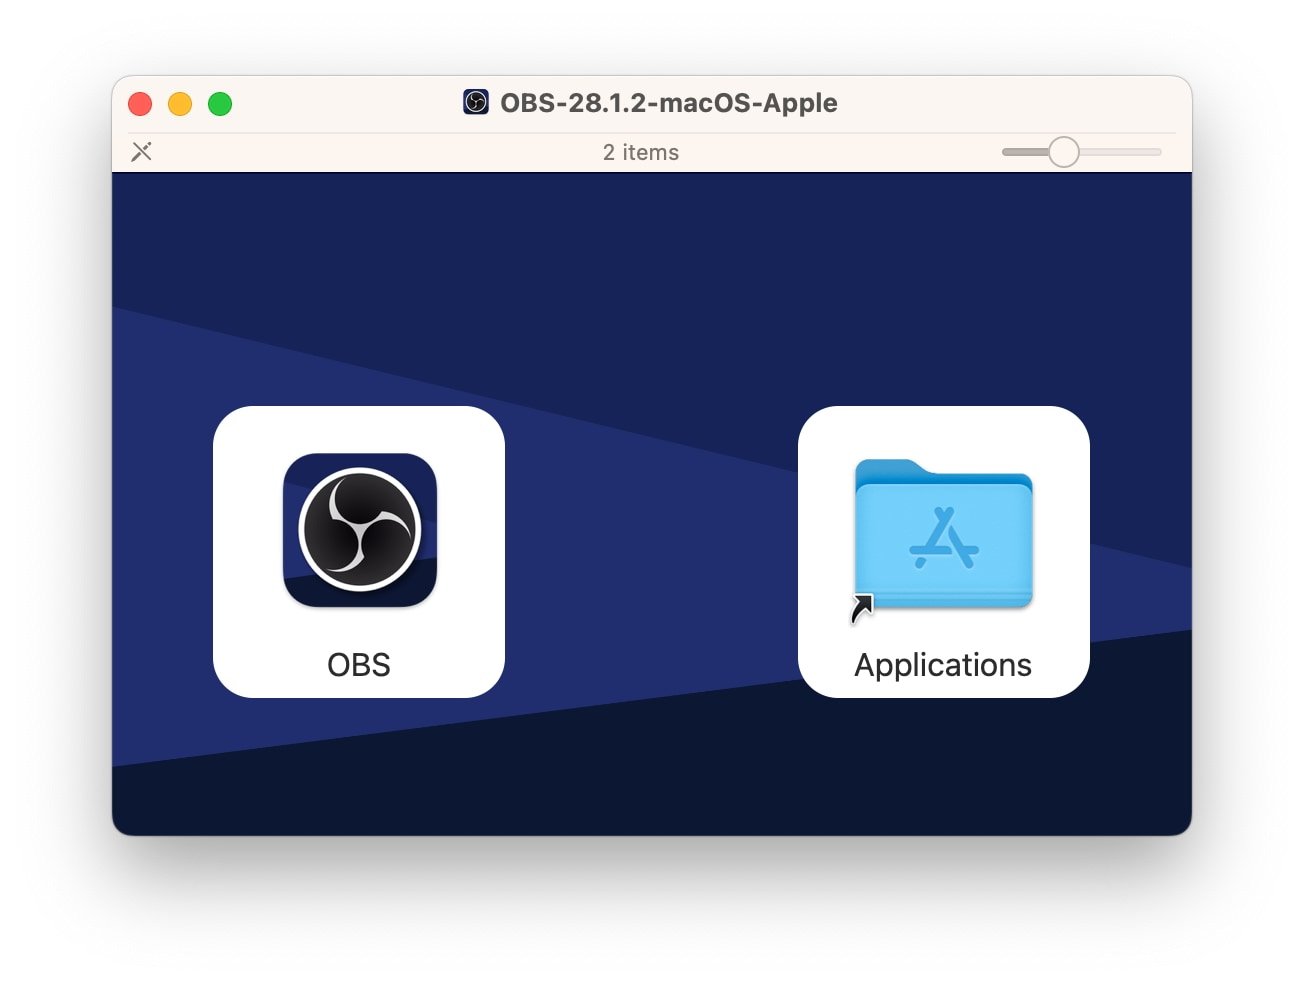 Installer untuk obs di macOS